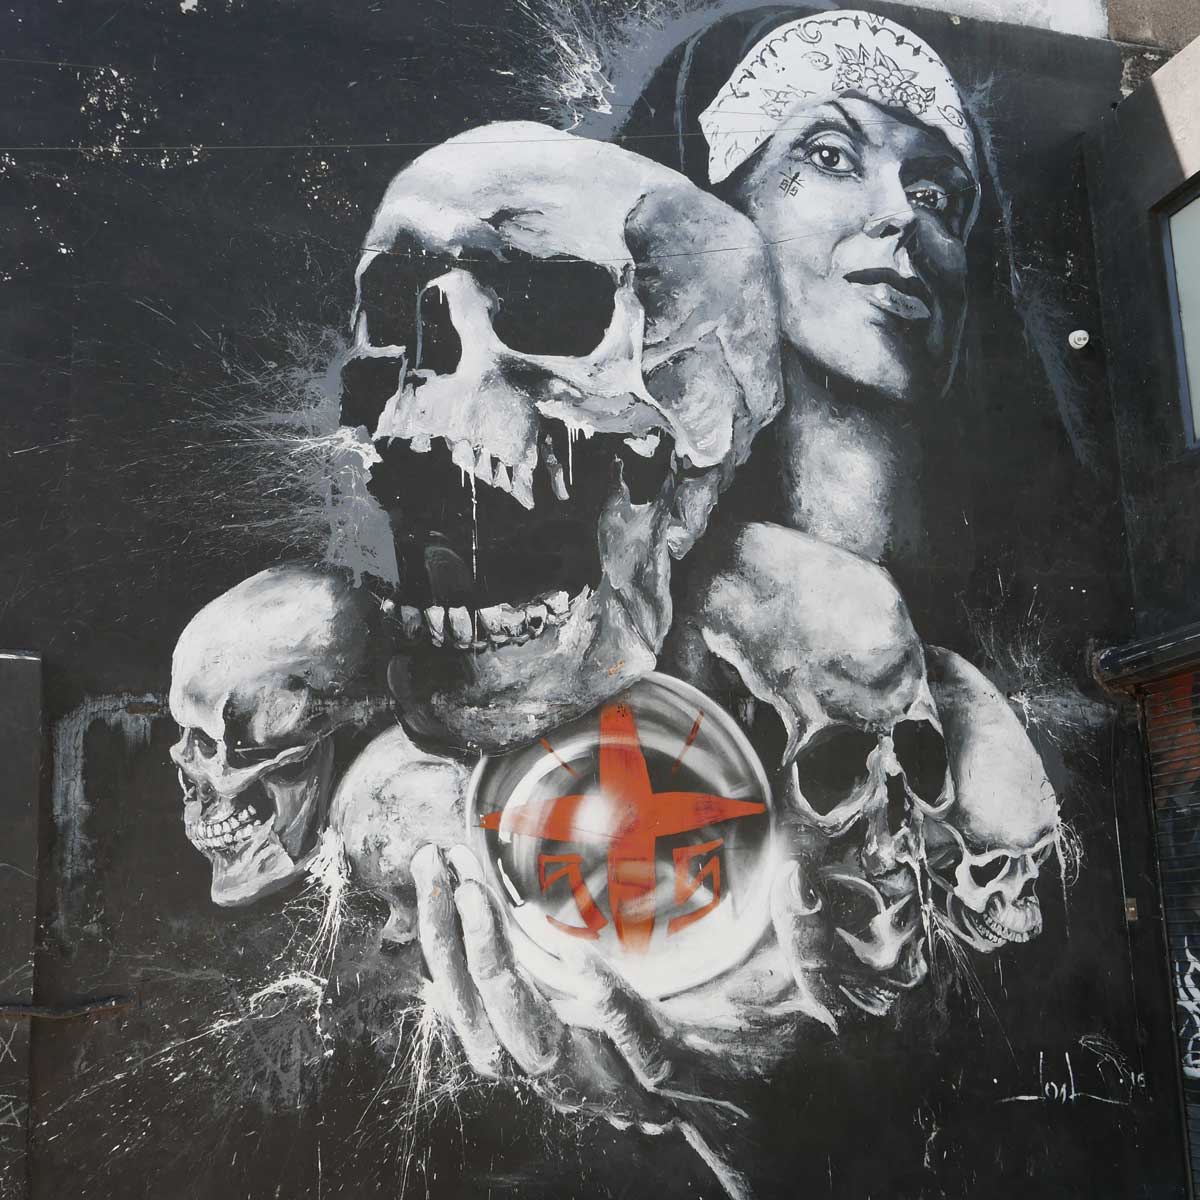 Street art in Guadalajara